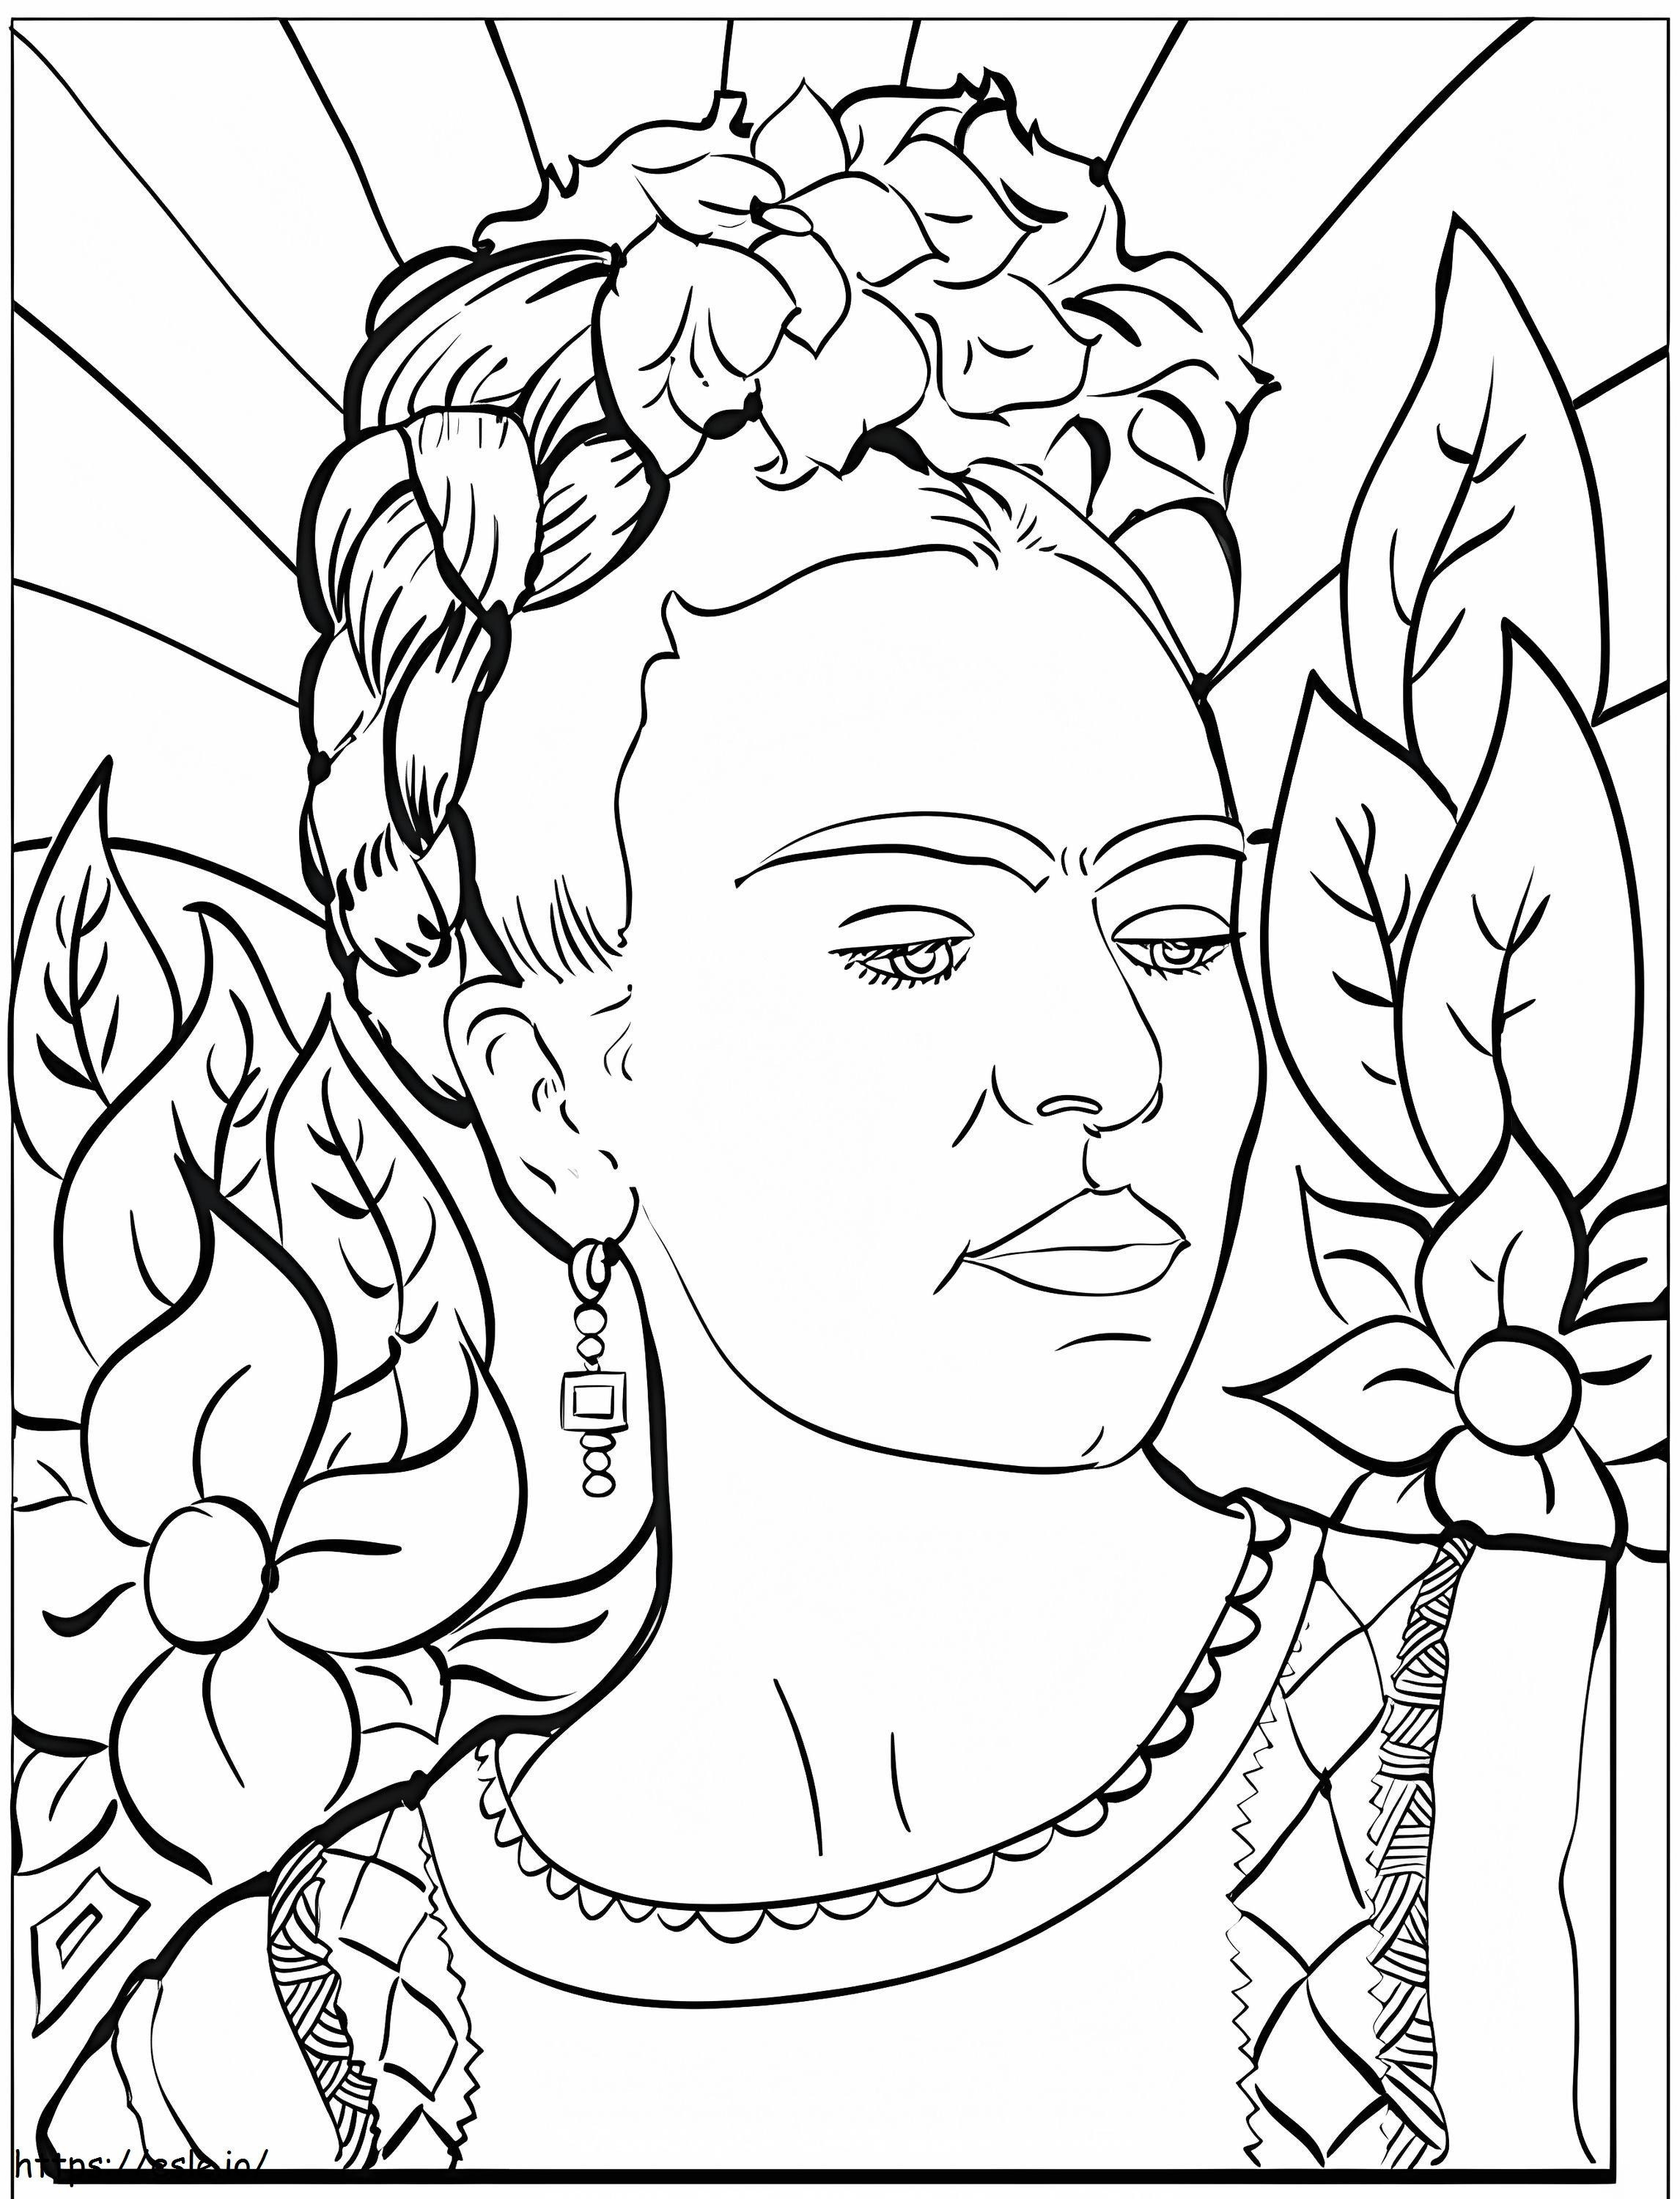 Frida Kahlo zum Ausdrucken ausmalbilder